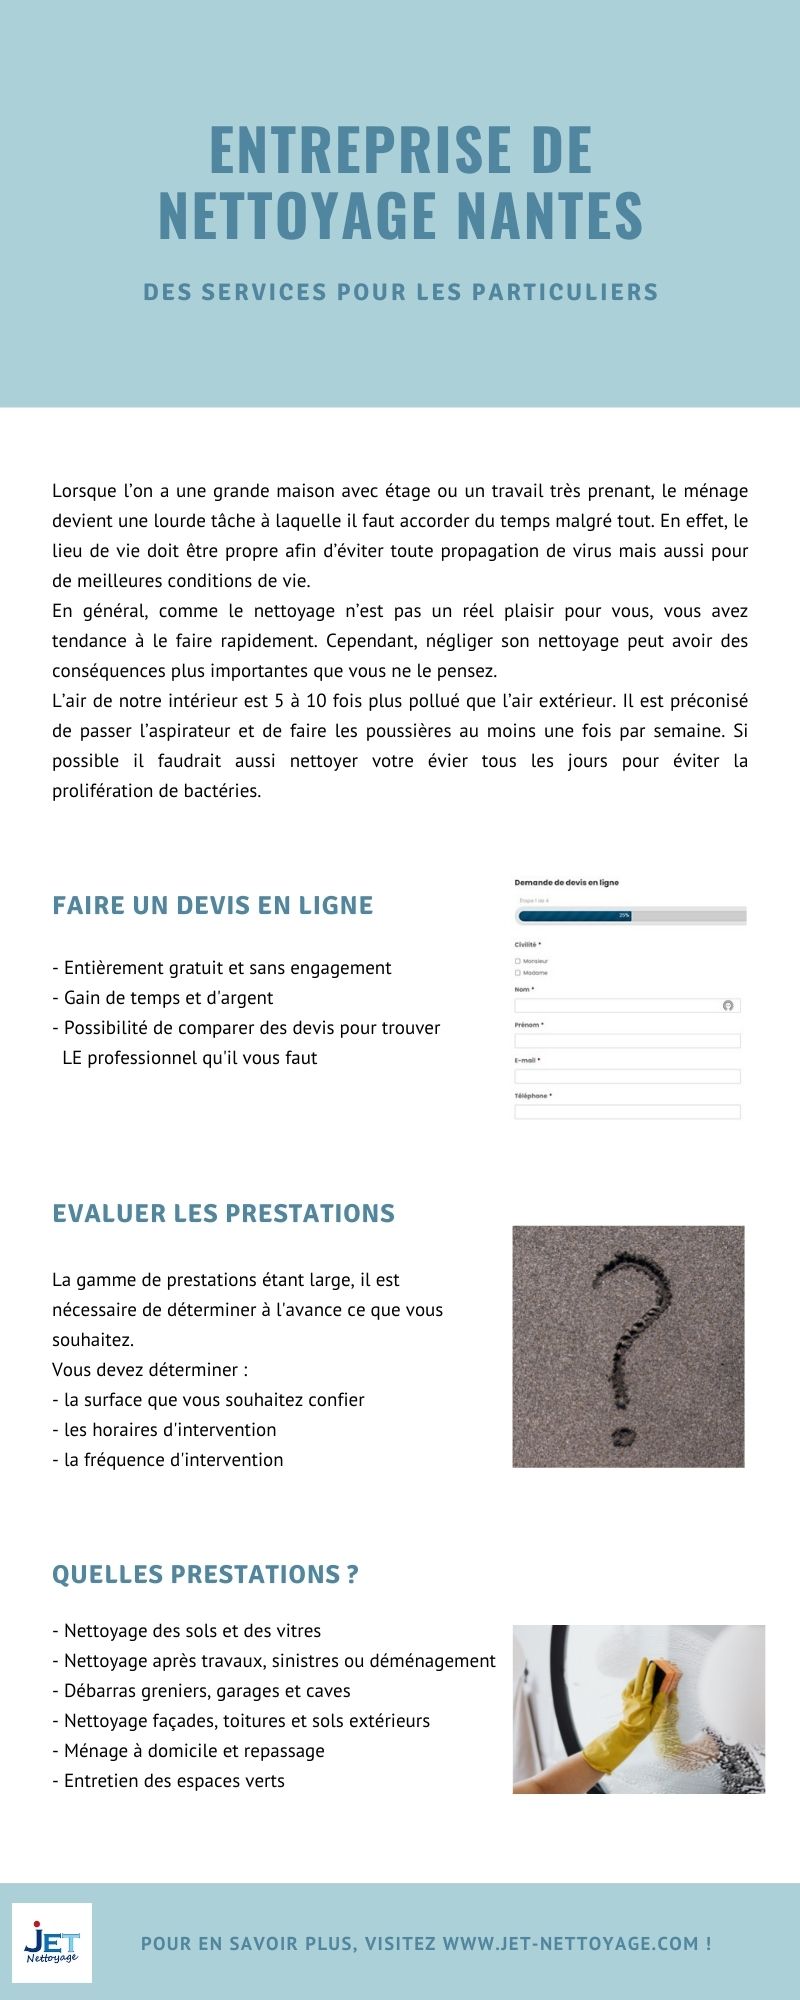 Infographie Entreprise de nettoyage pour particuliers Nantes